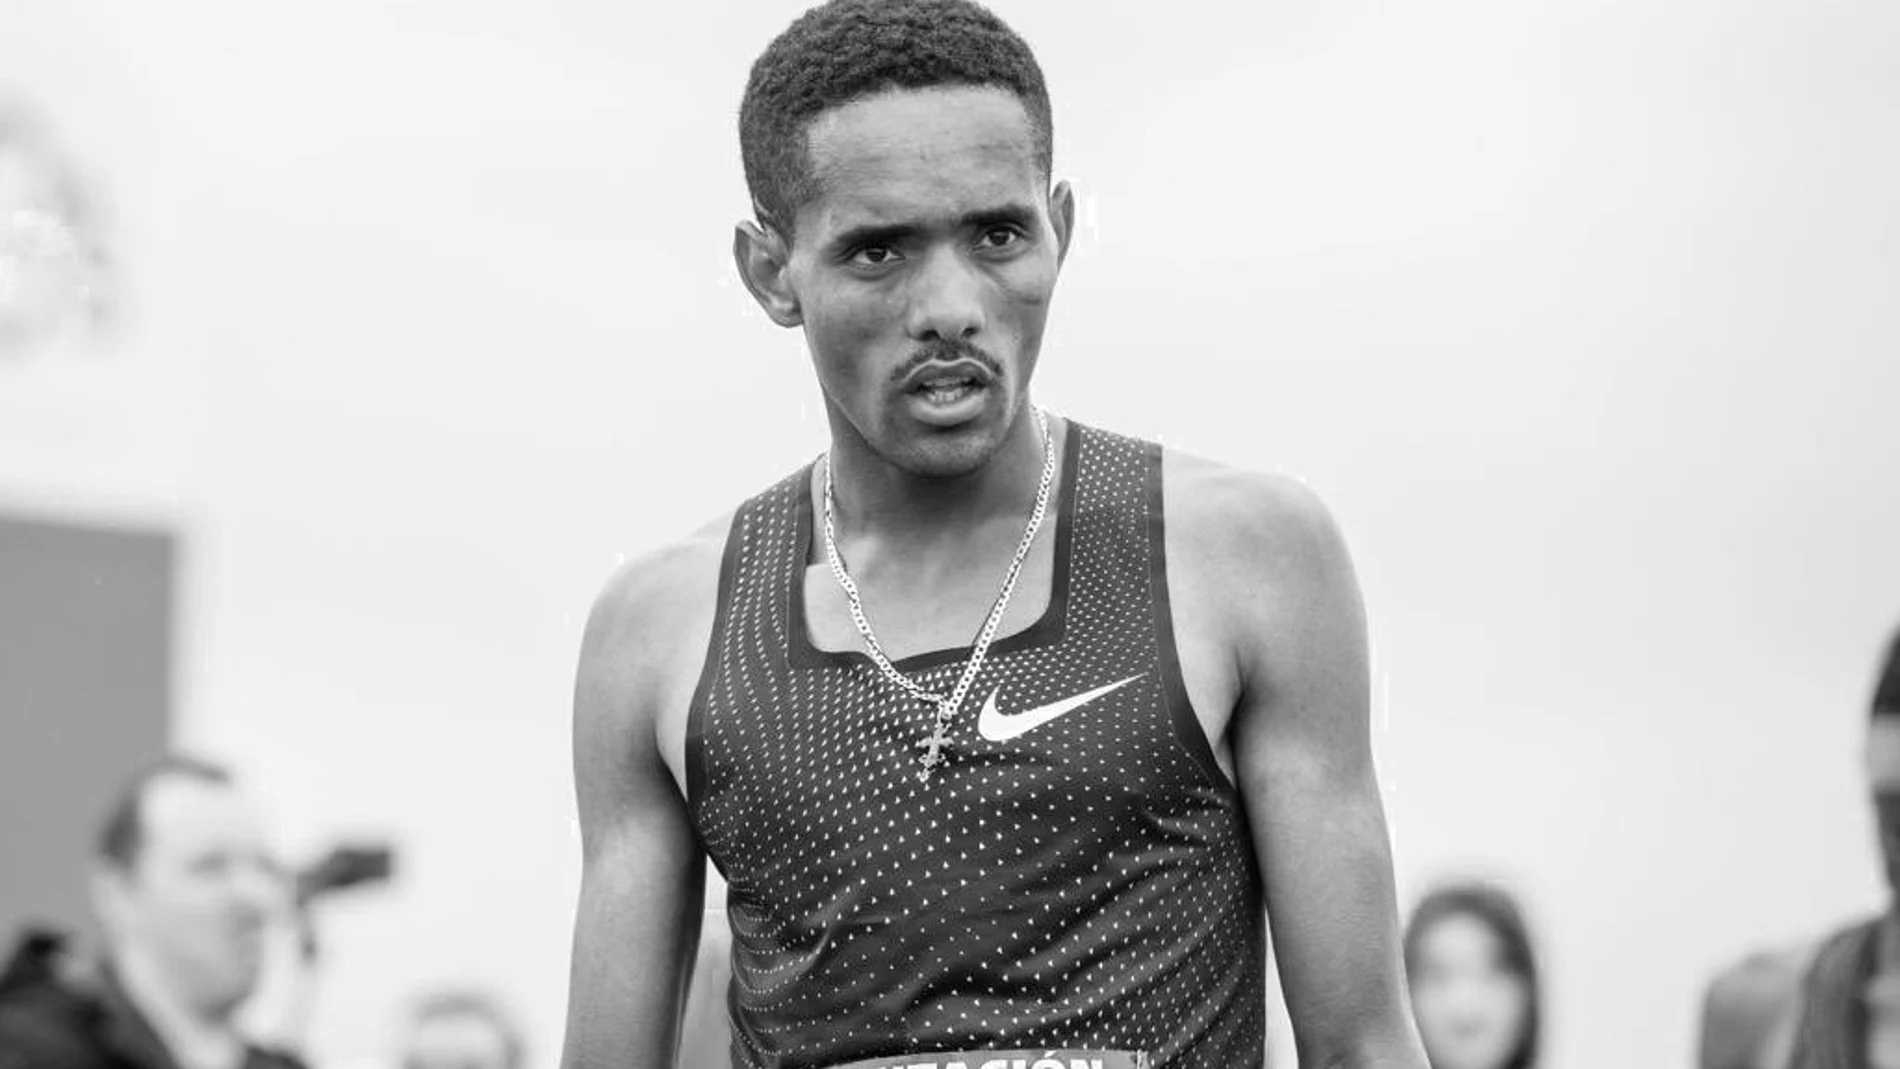 Imagen del atleta etíope de 22 años